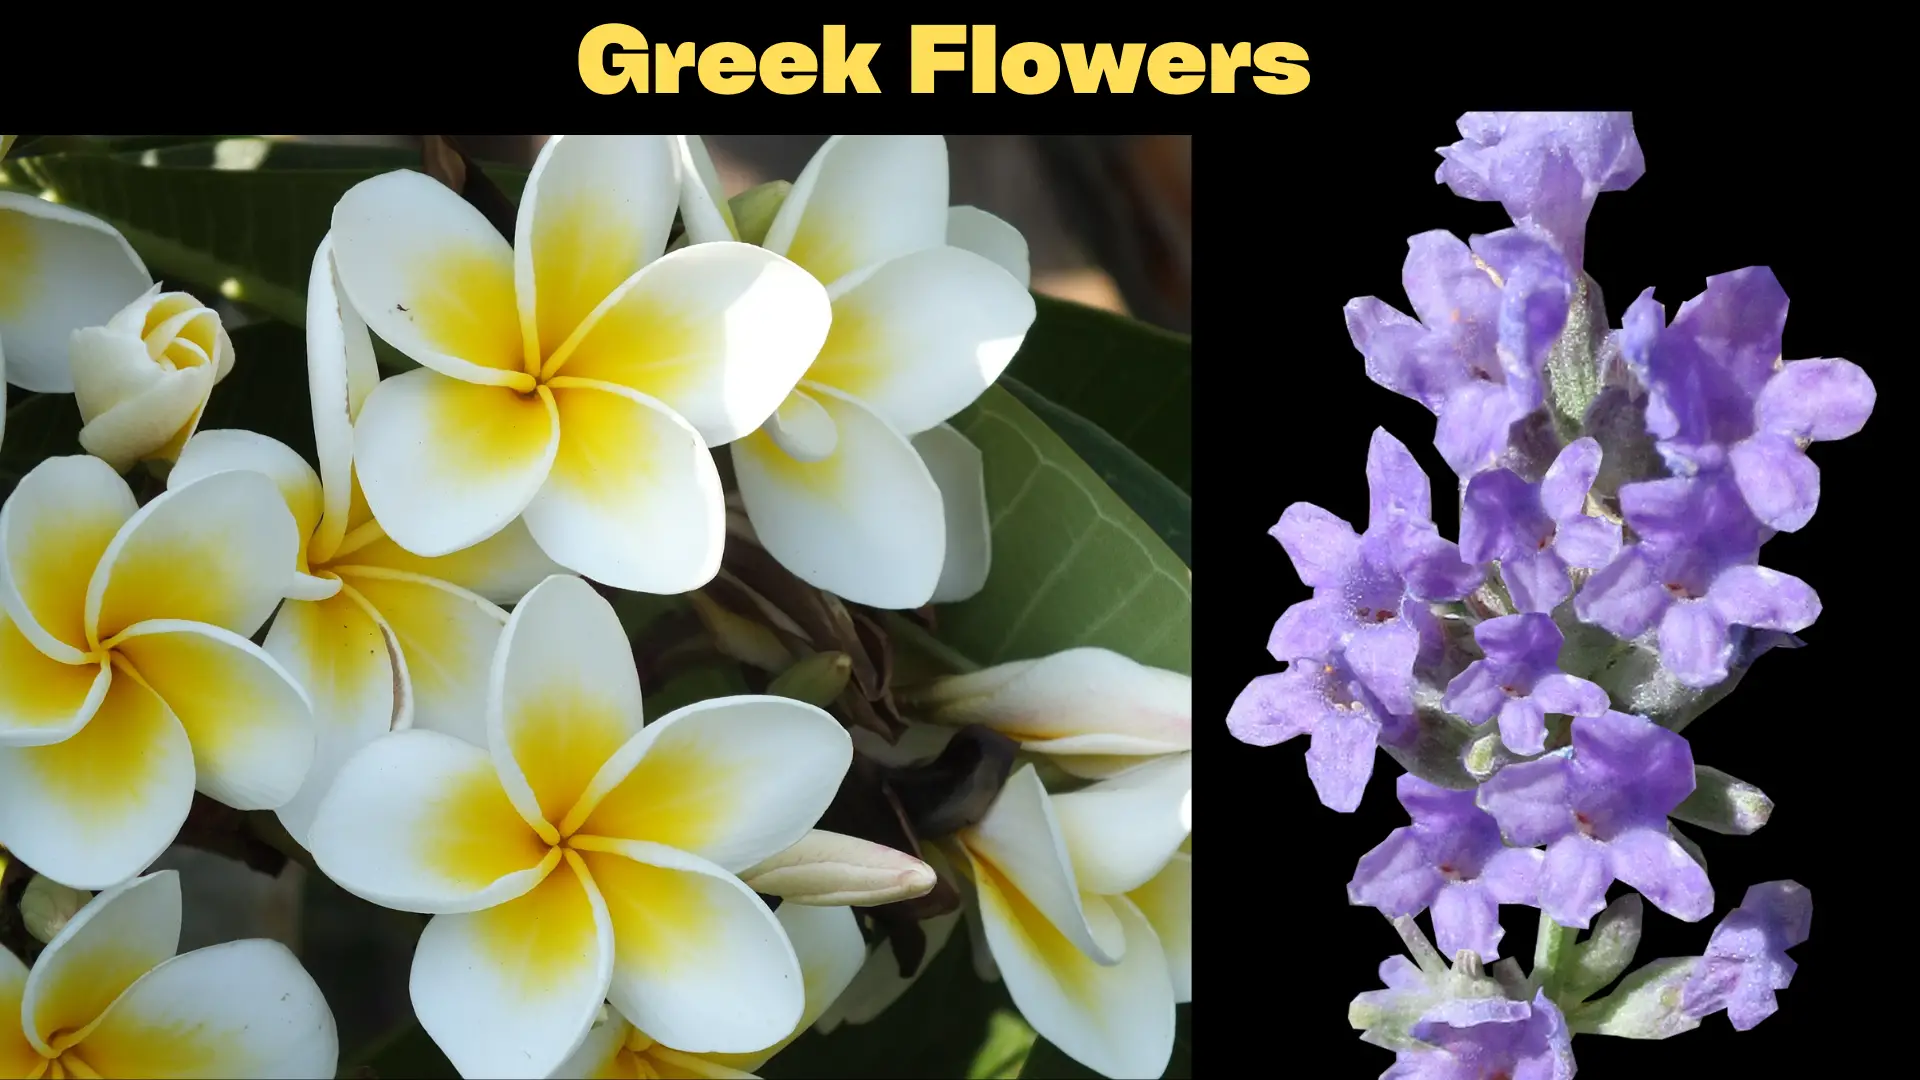 Greek Flowers Names